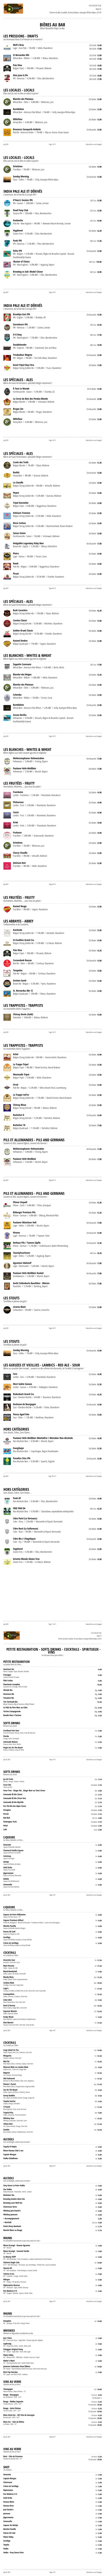 carte menu digitalisé S'Beer